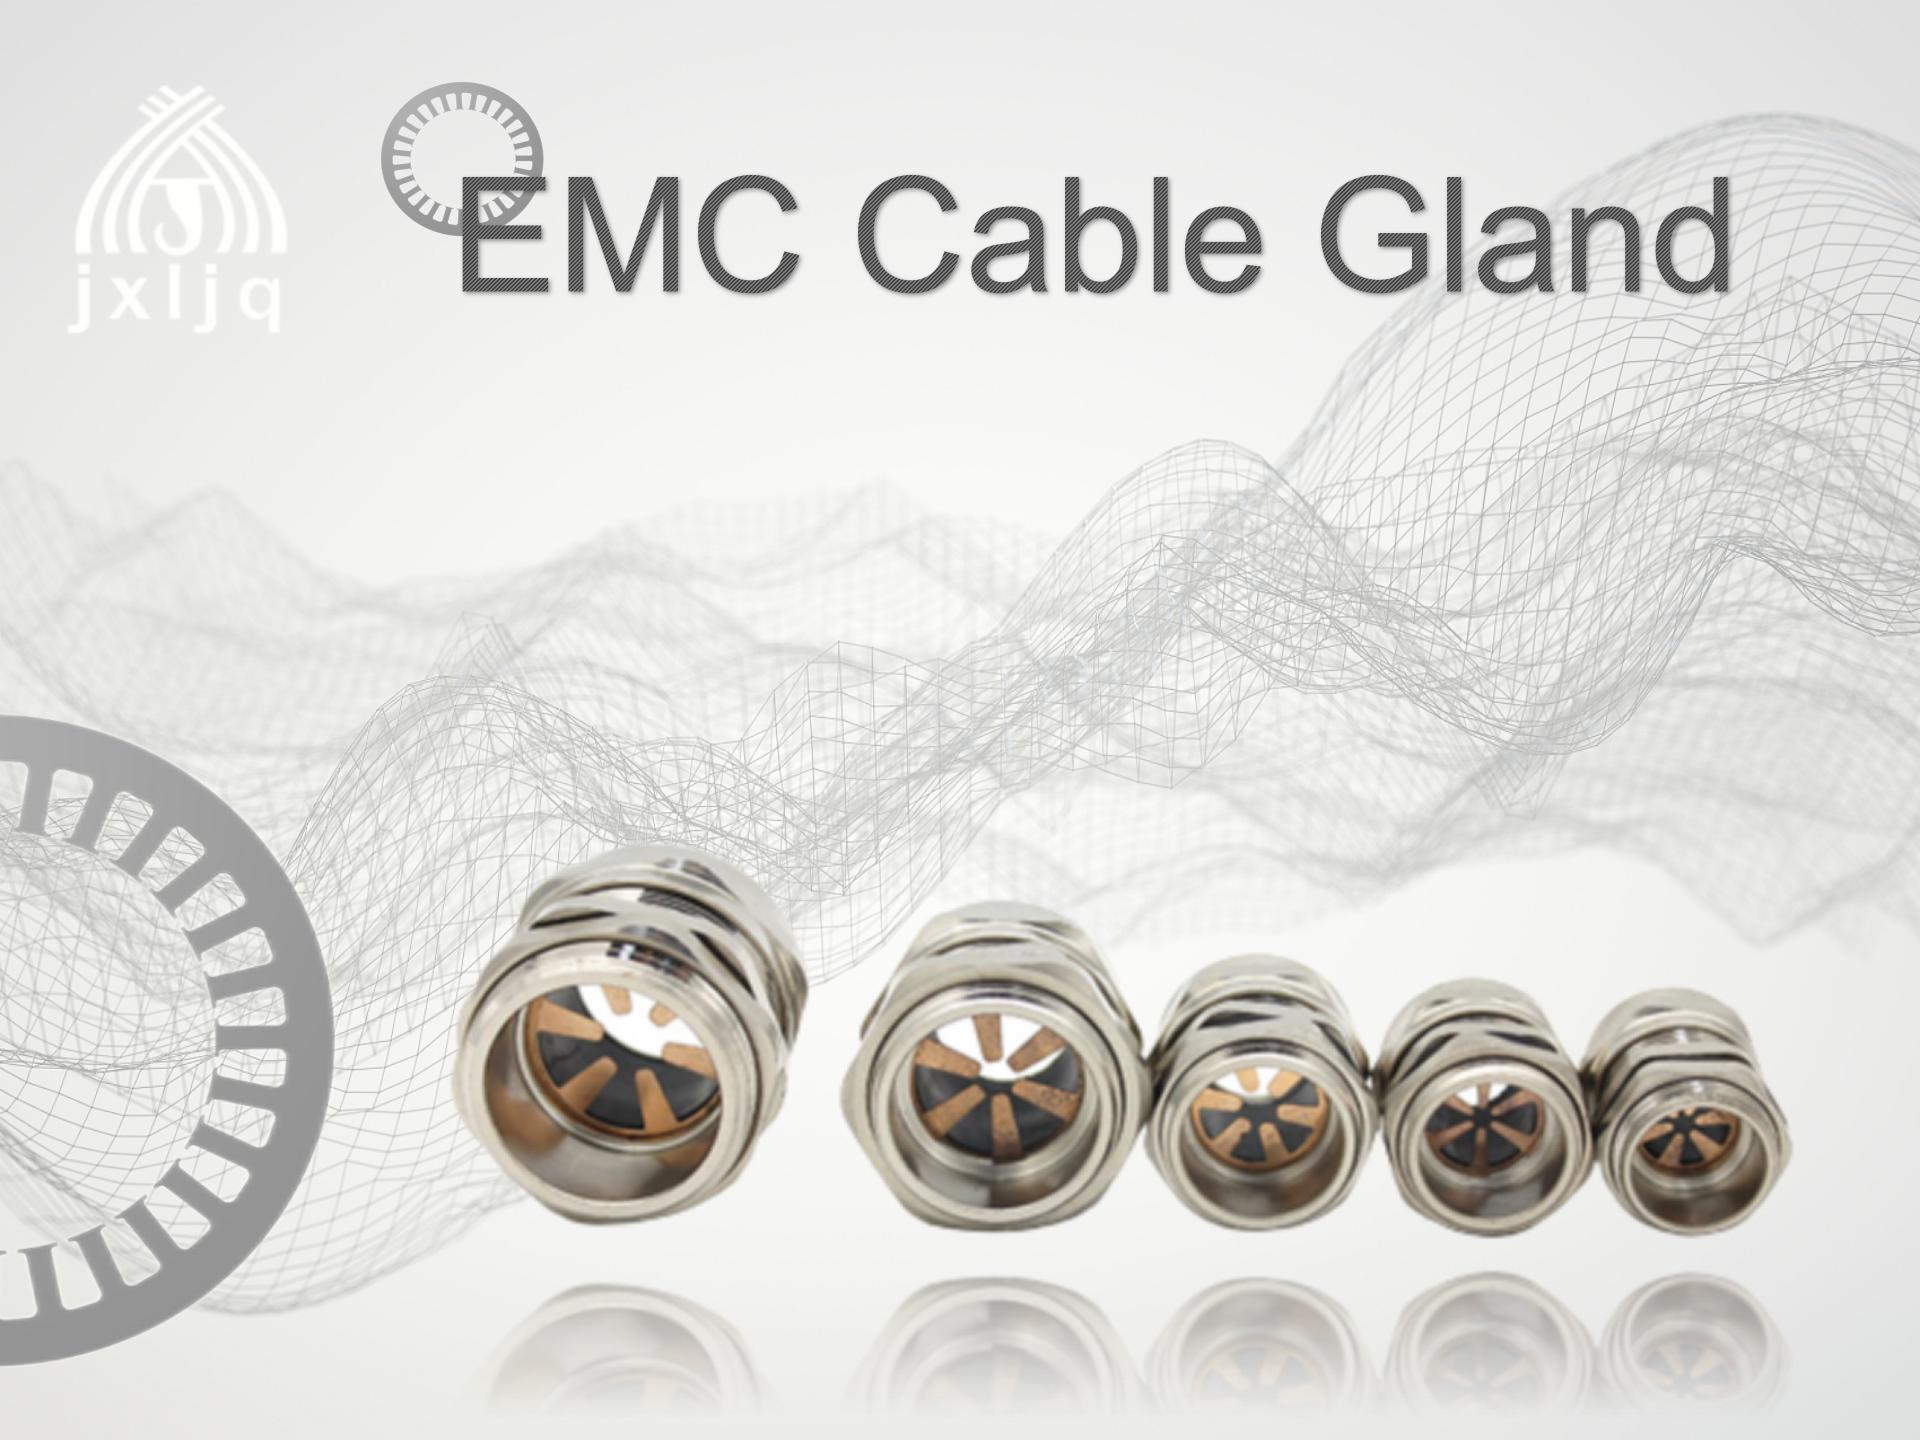 Waa maxay EMC cable gland?